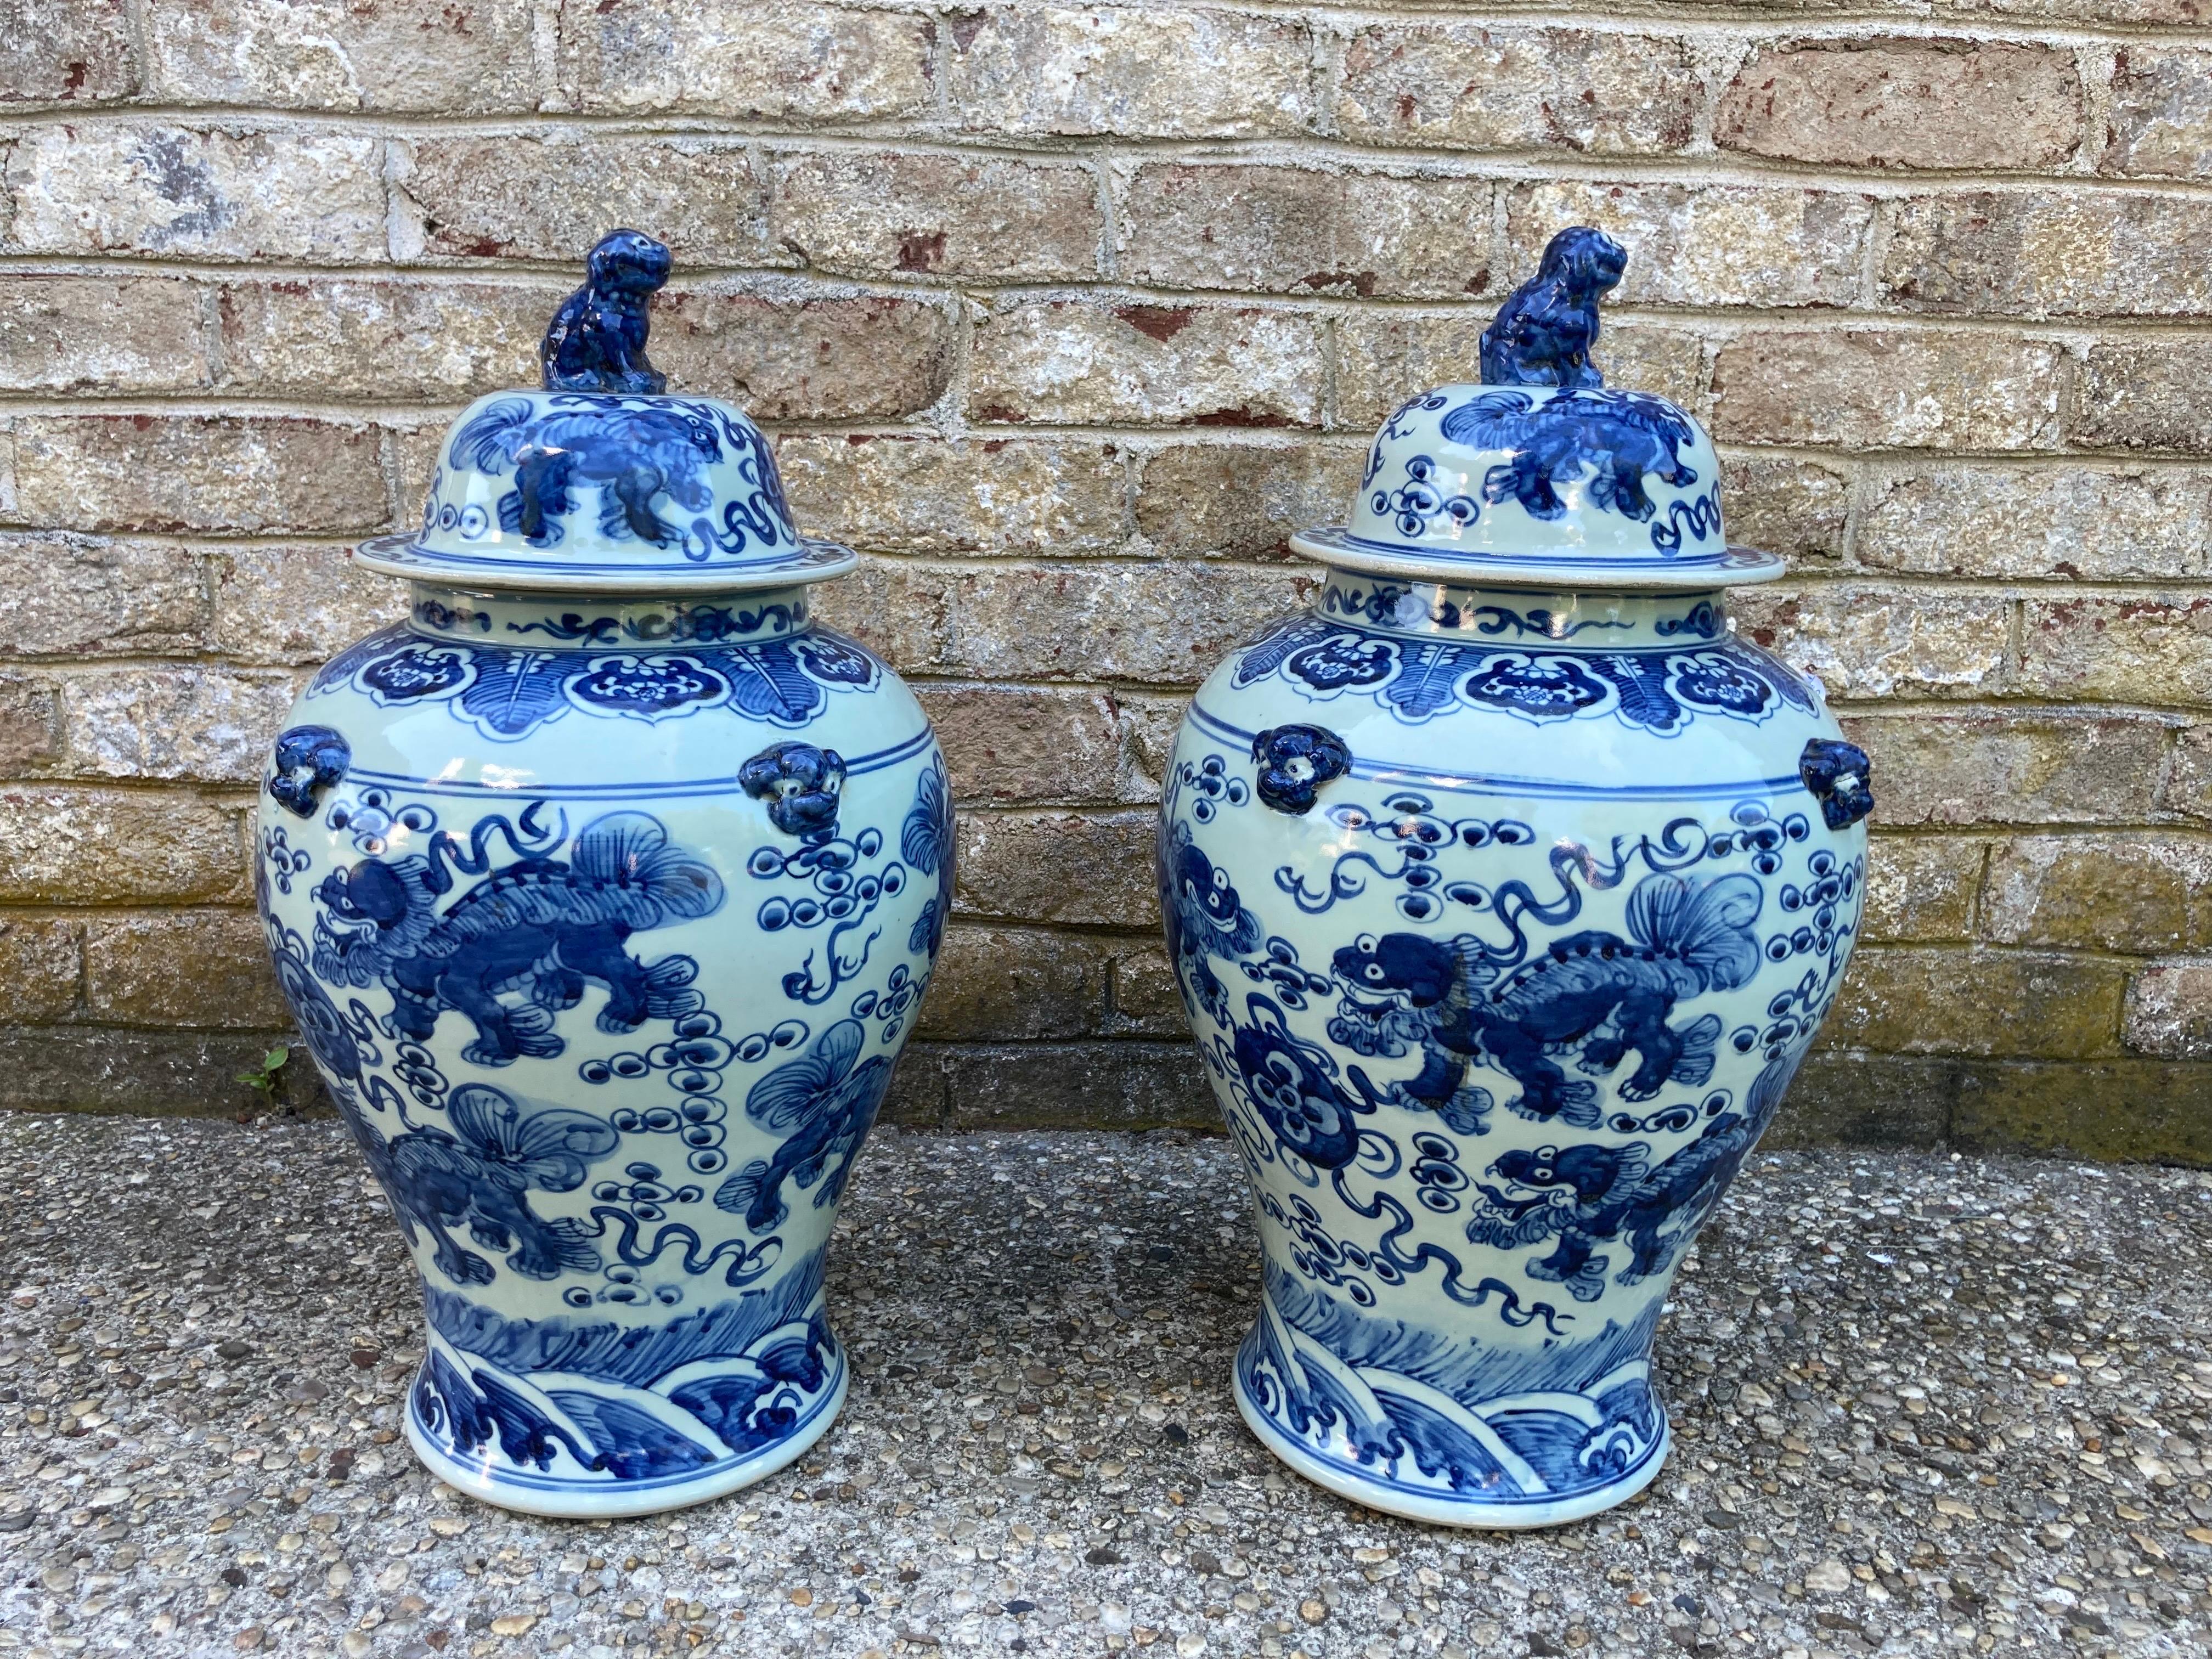 Grande paire de jarres chinoises bleues et blanches avec couvercles...... chiens de foo peints sur les côtés des jarres ainsi que des figures sur les couvercles.... 